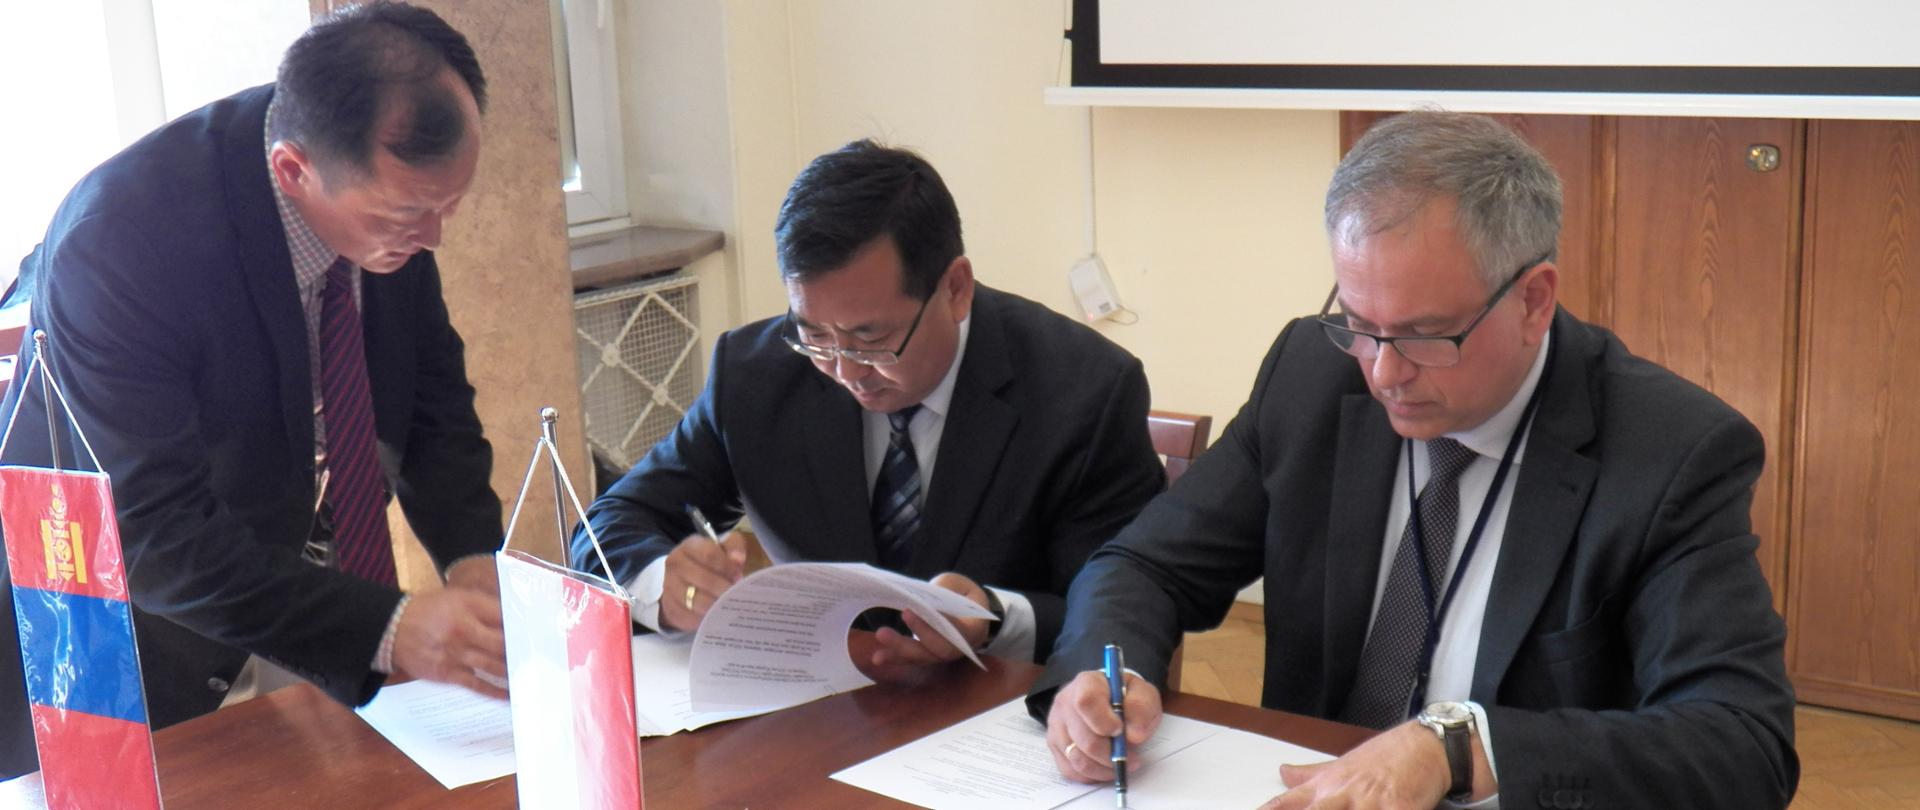 Podpisanie protokołu uzgodnień na zakończenie polsko – mongolskich rozmów w sprawie przewozów drogowych